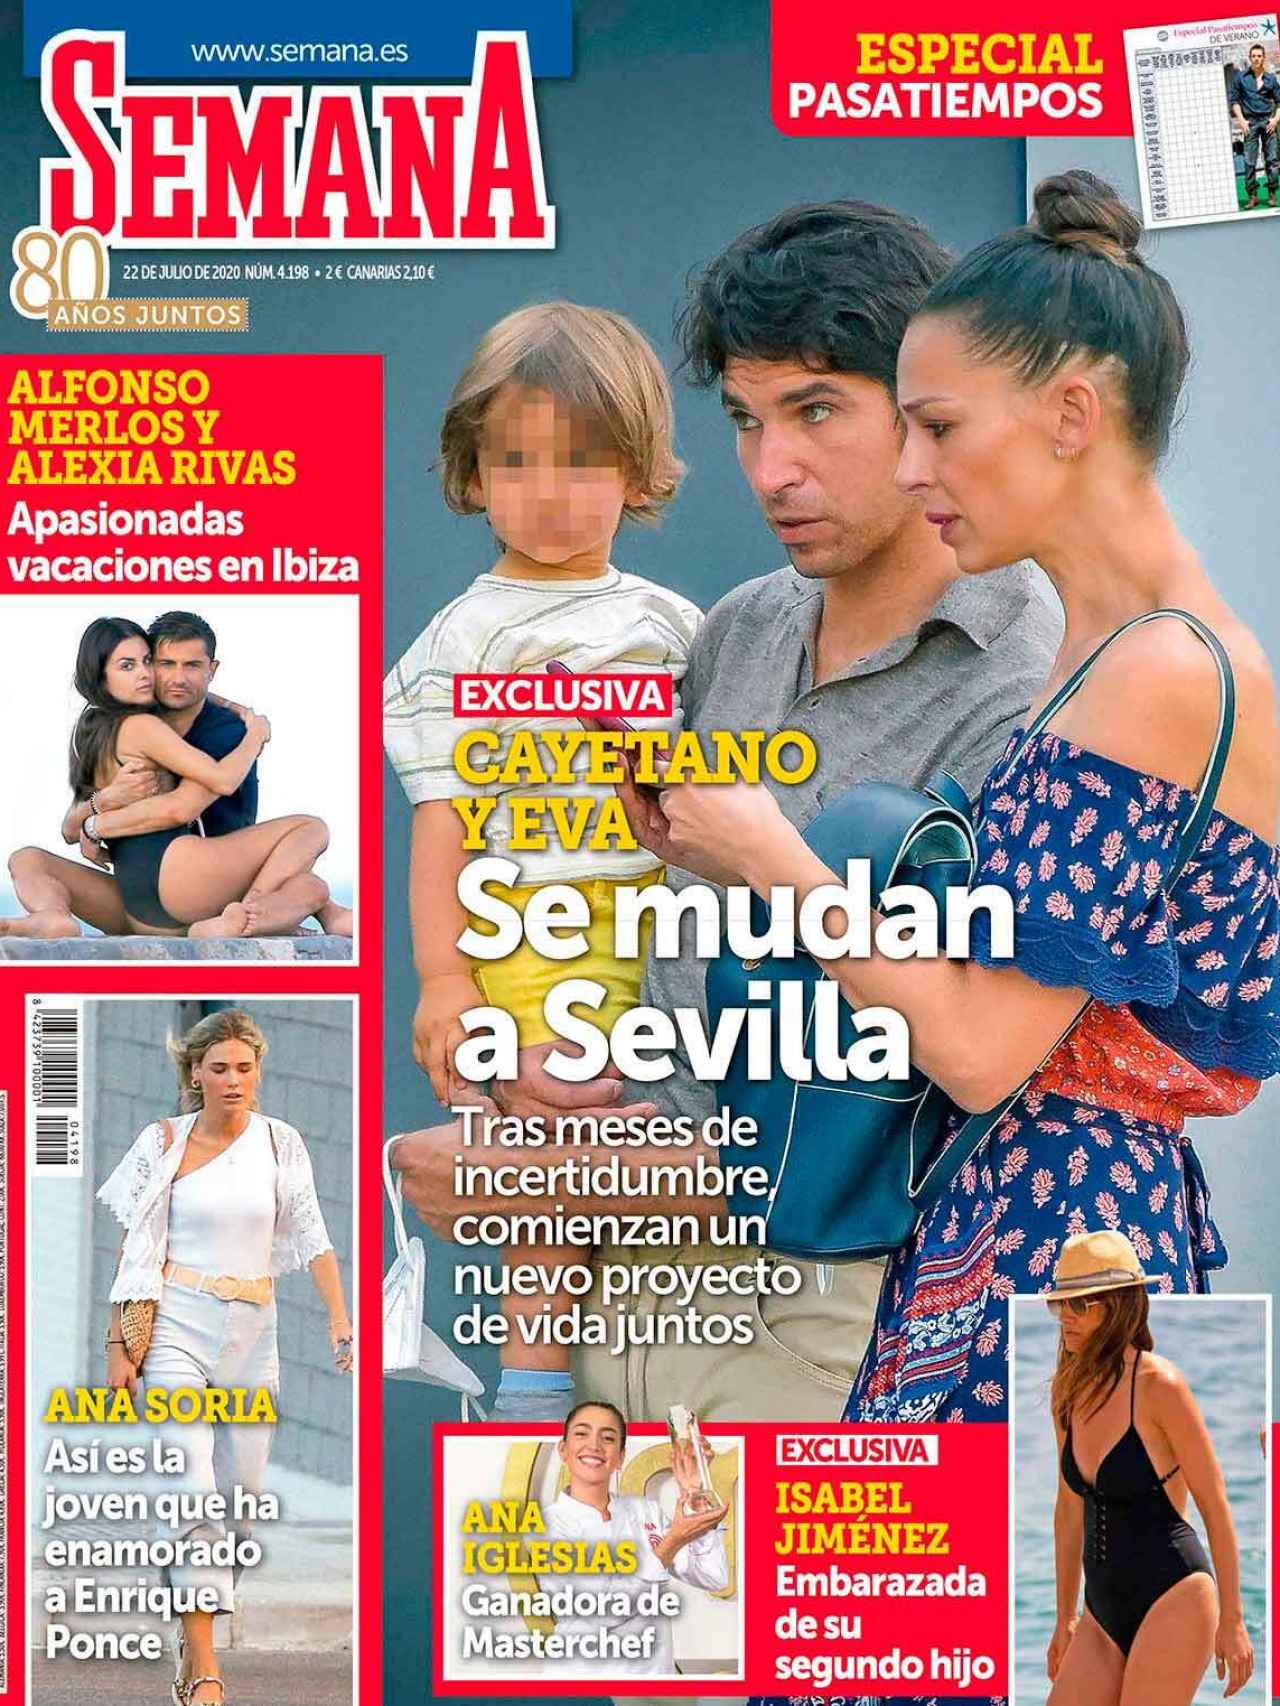 Revista 'Semana' de este miércoles, con la noticia del embarazo de Isabel Jiménez.